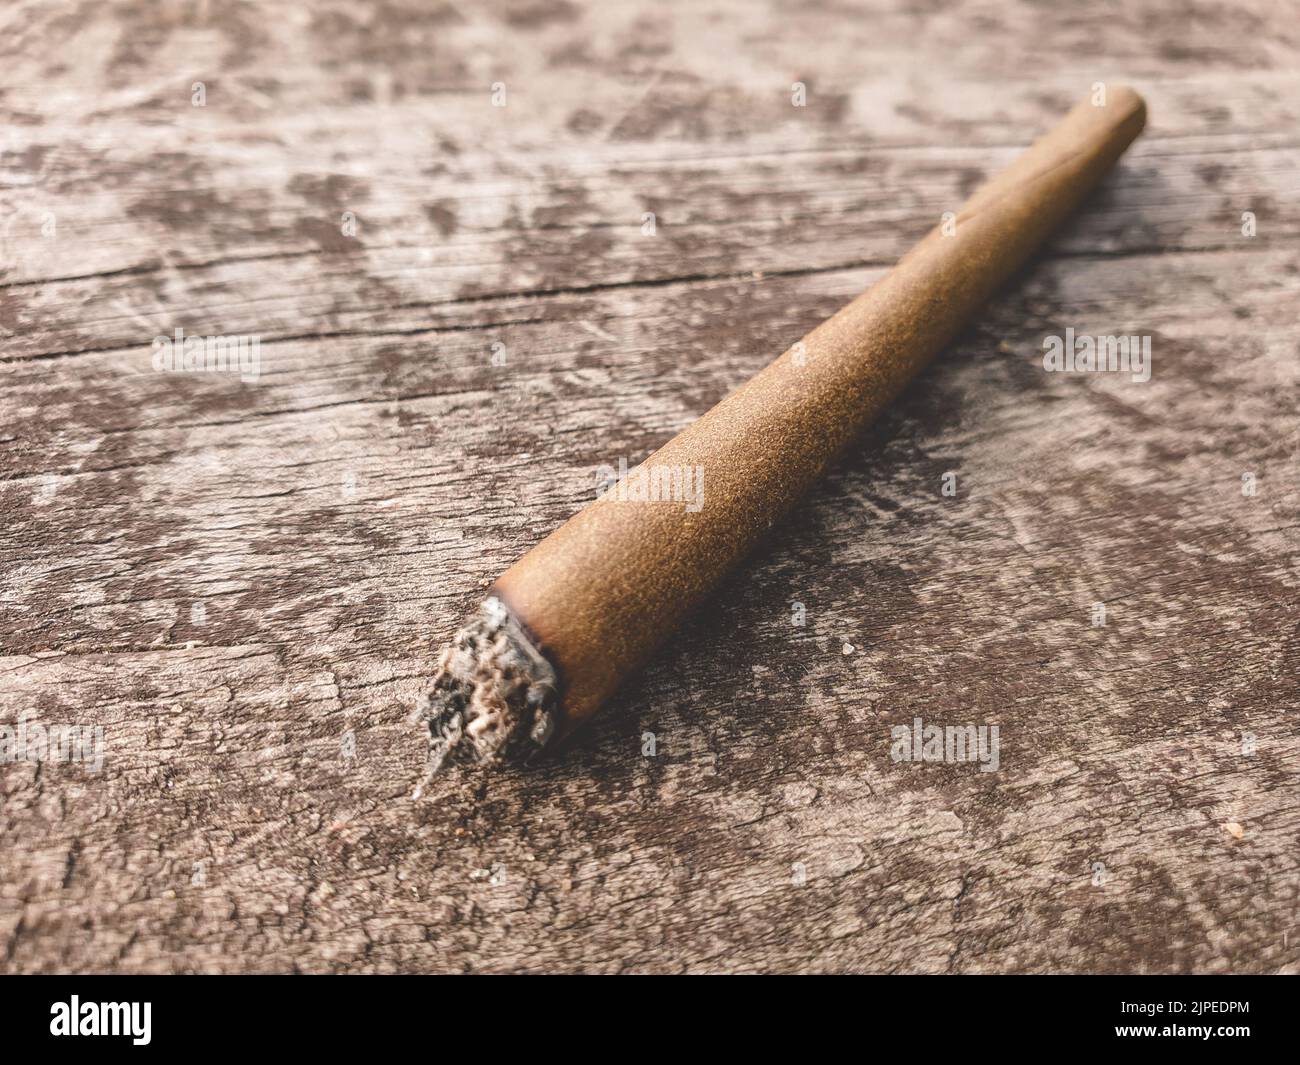 Détail d'un joint éclairé de marijuana ou de mauvaise herbe sur une table en bois marron à l'extérieur. Banque D'Images